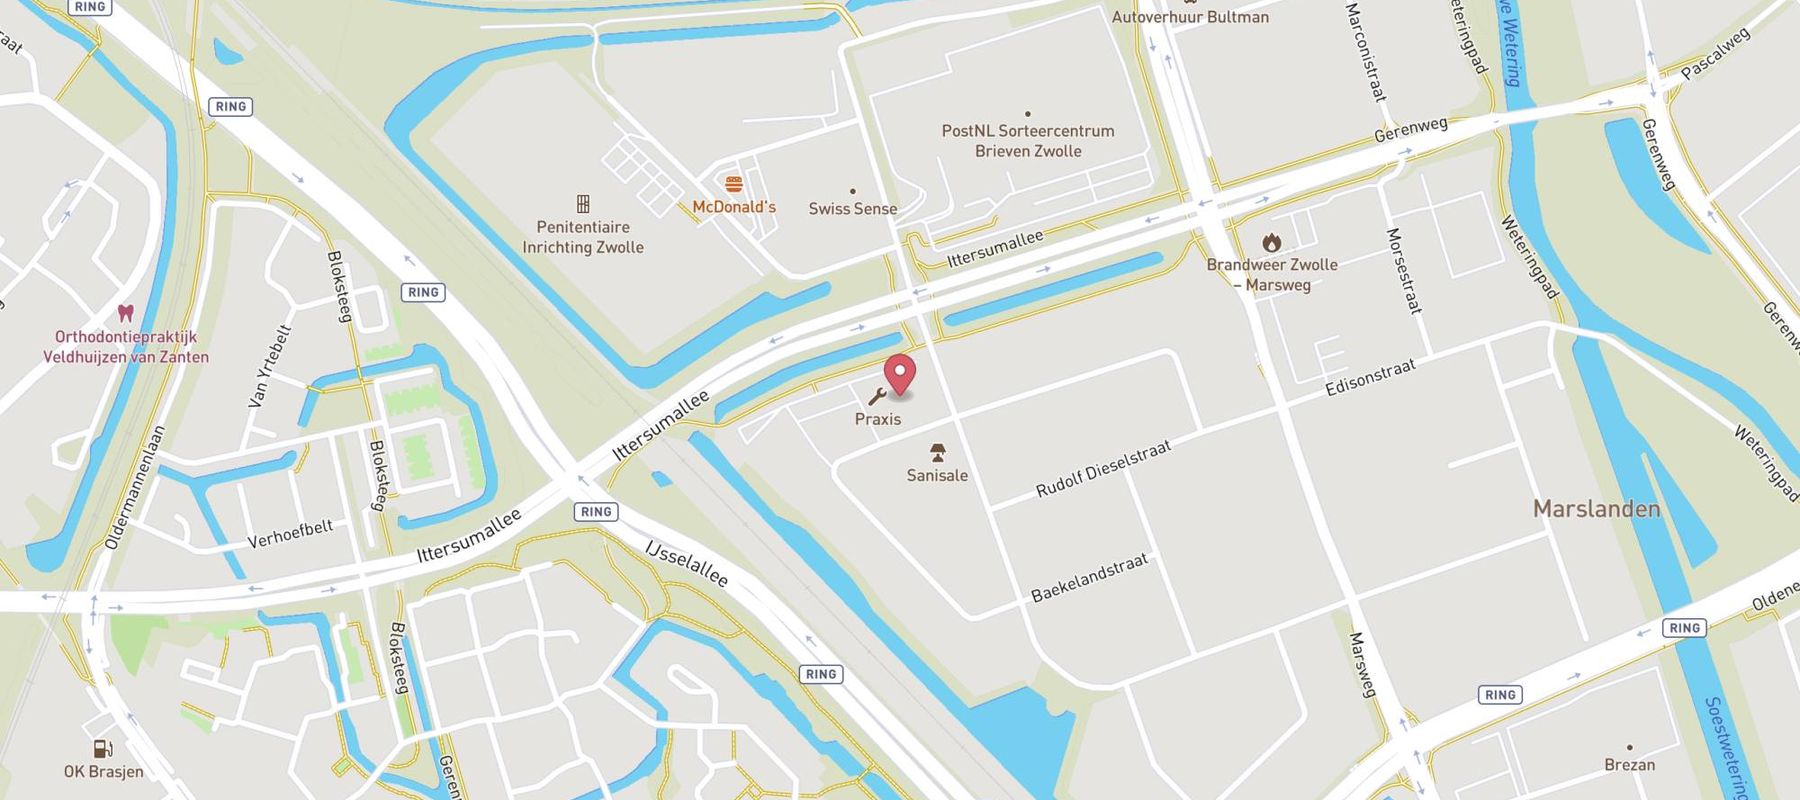 Praxis Bouwmarkt Zwolle map